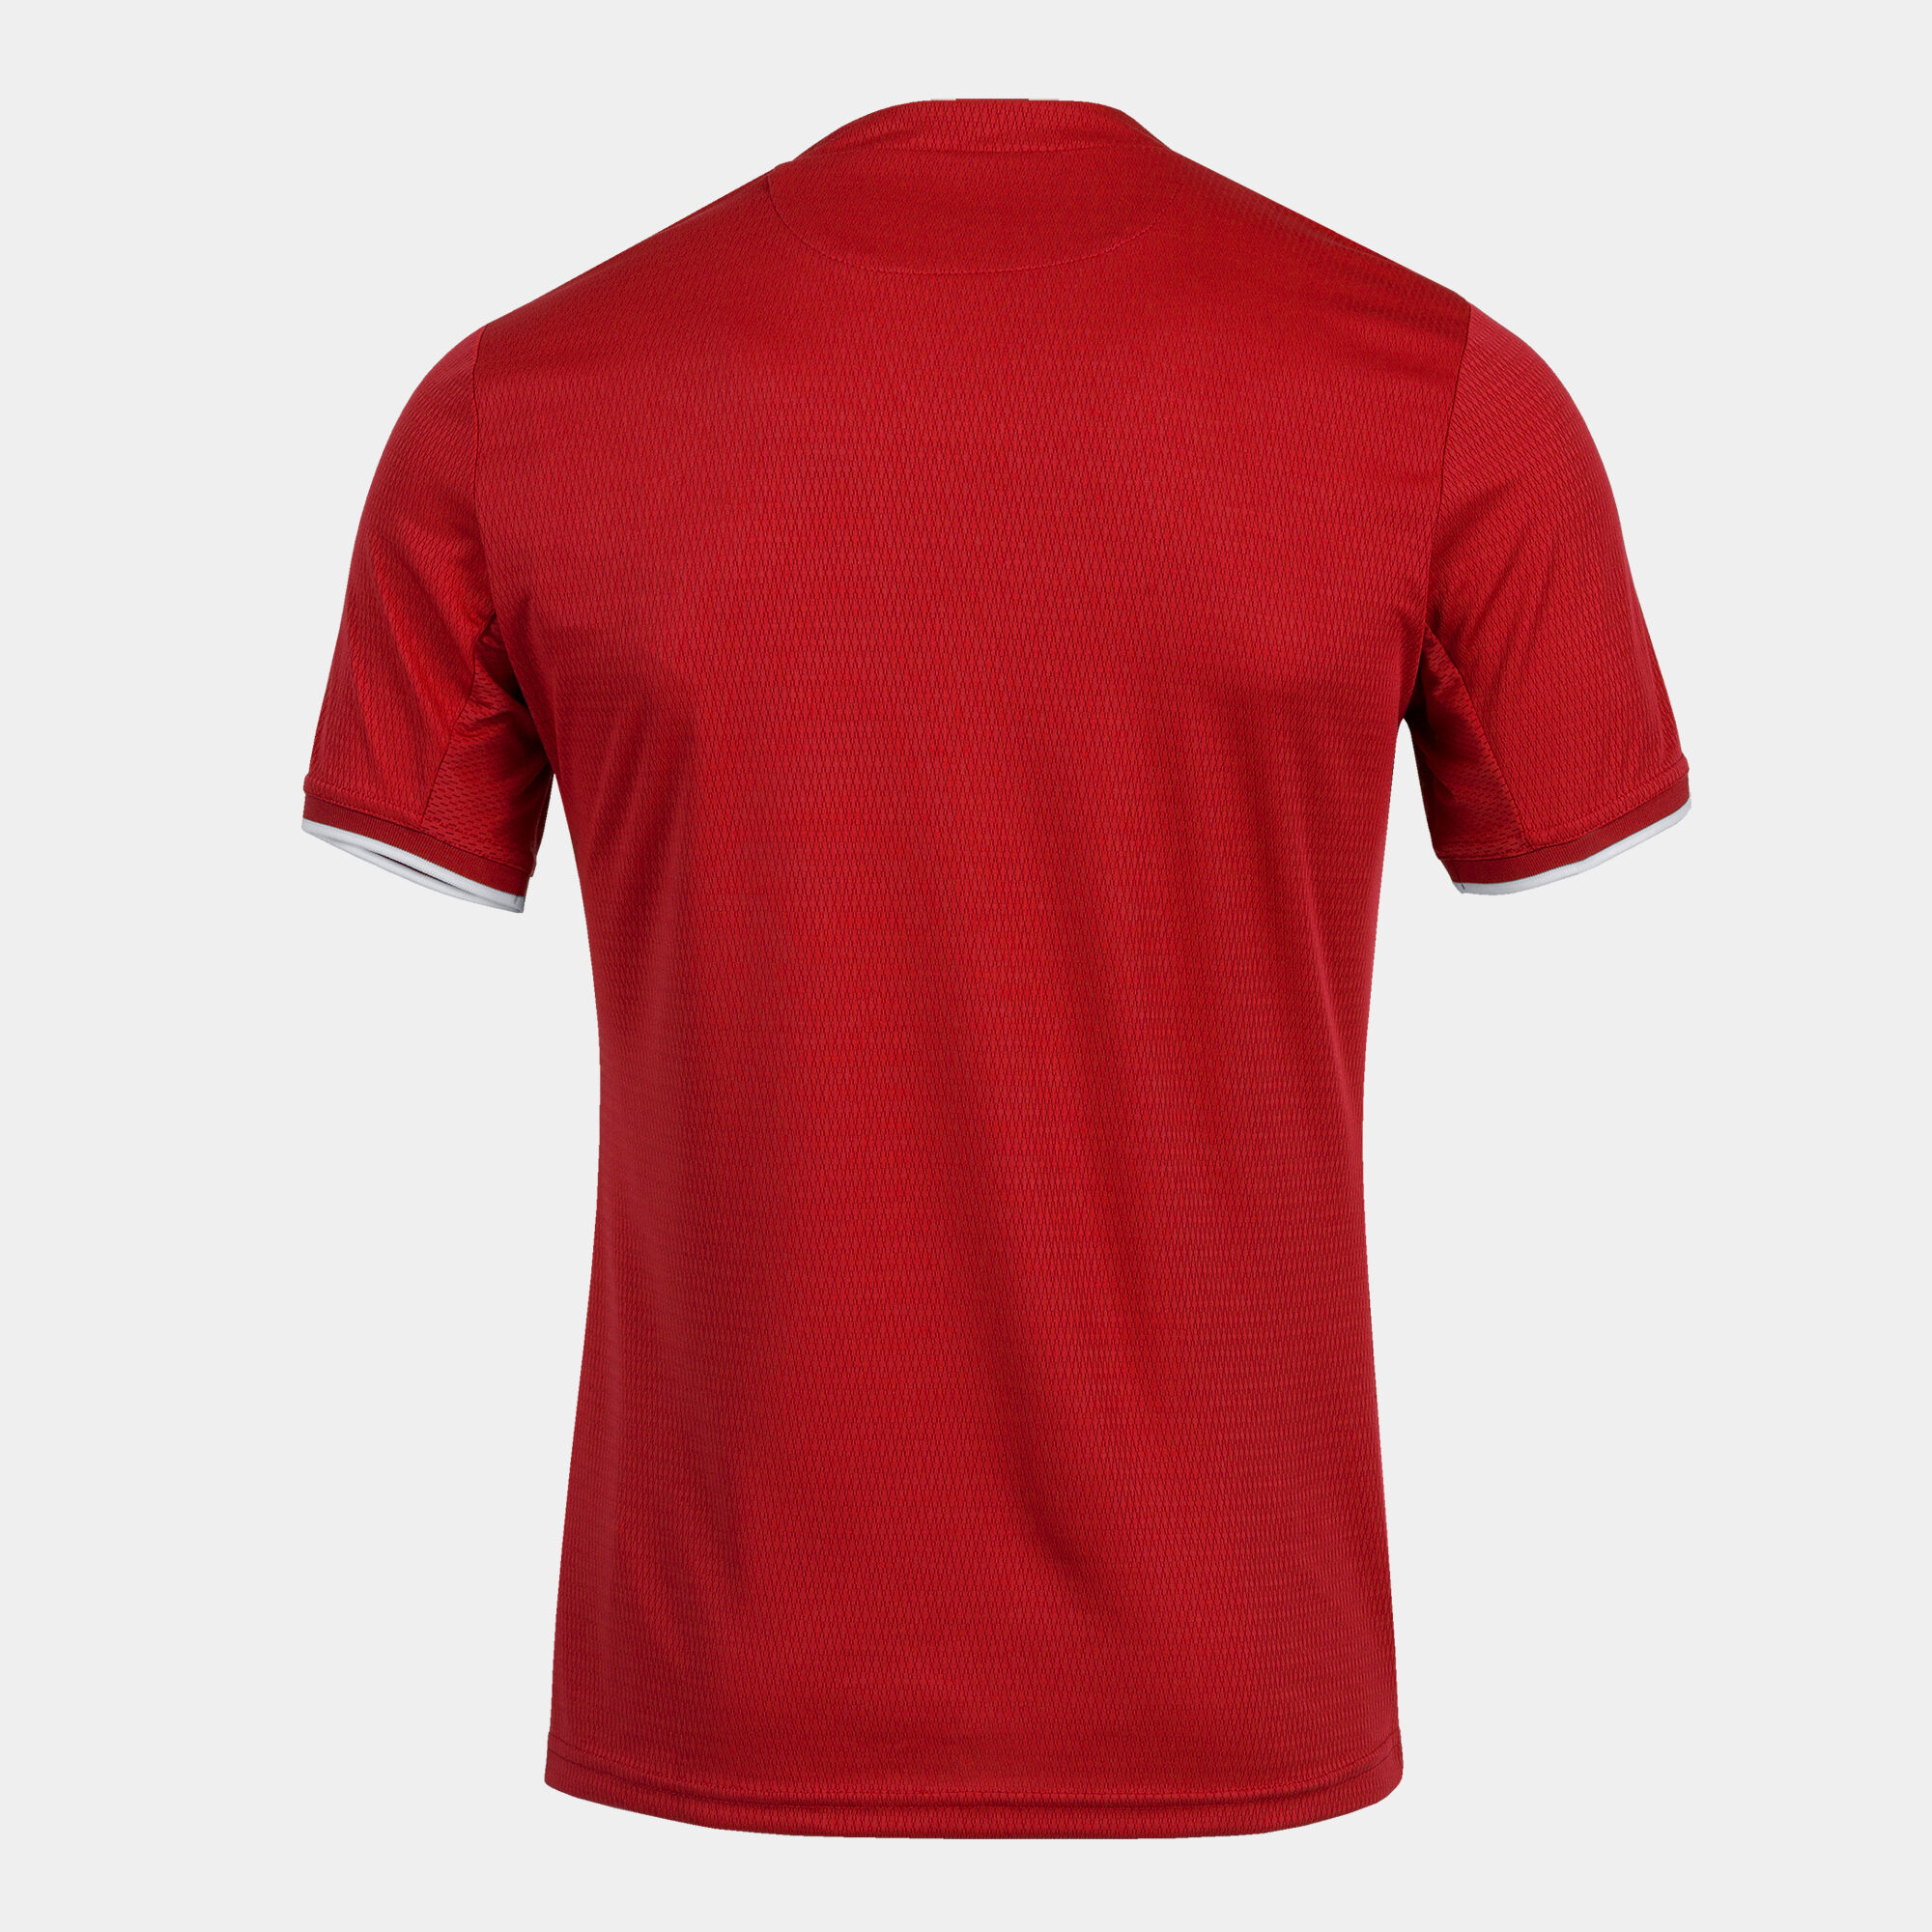 T-shirt manga curta homem Toletum IV vermelho branco